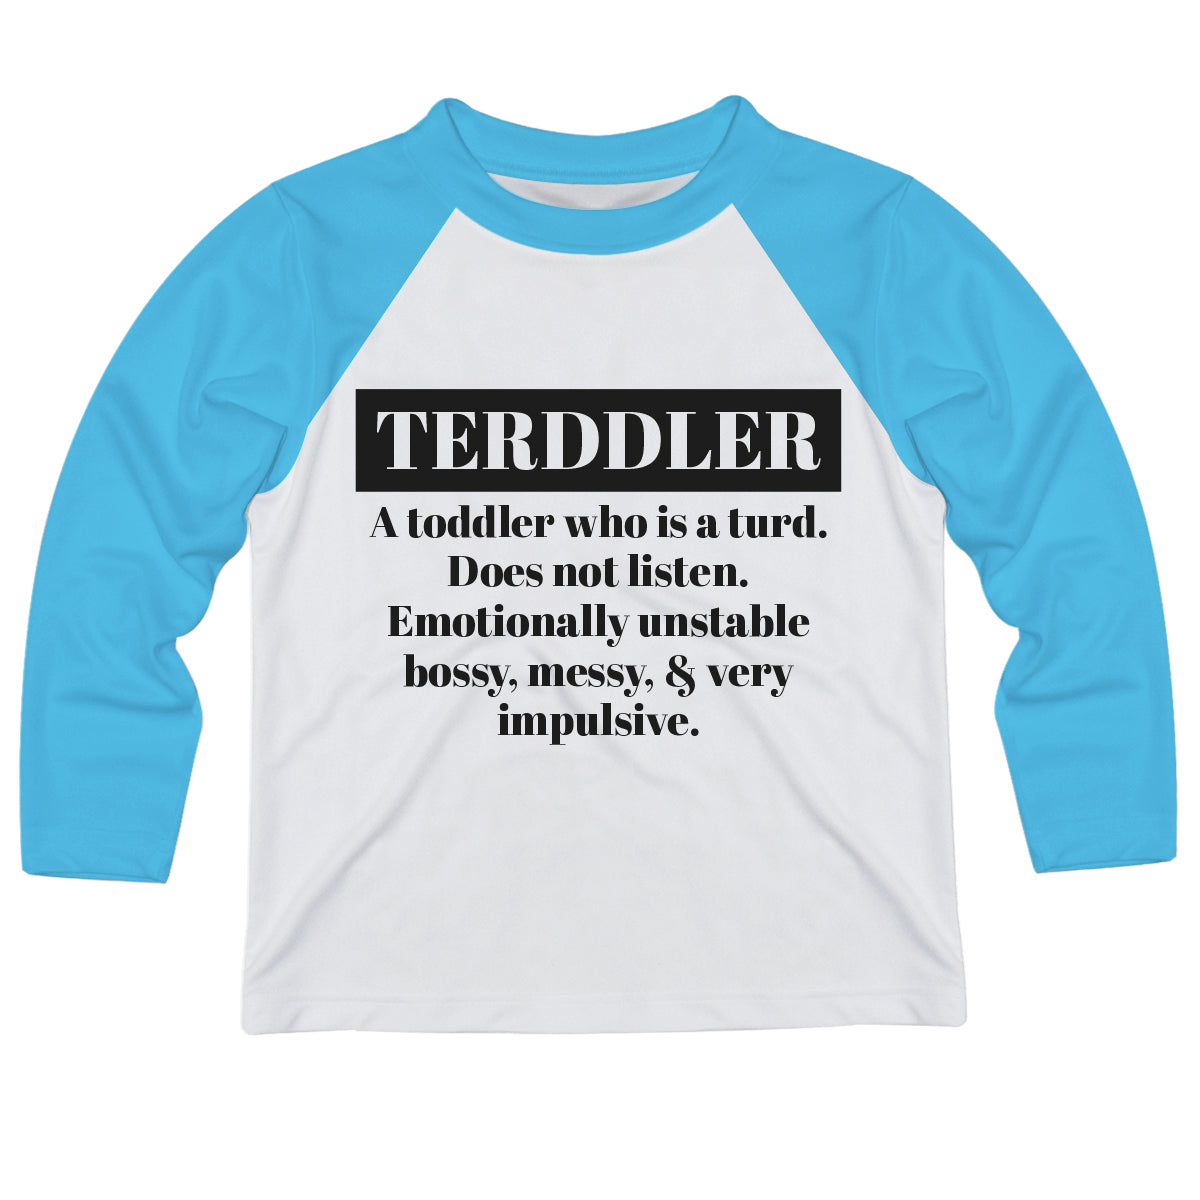 Terddler White and Turquoise Raglan Long Sleeve Tee Shirt